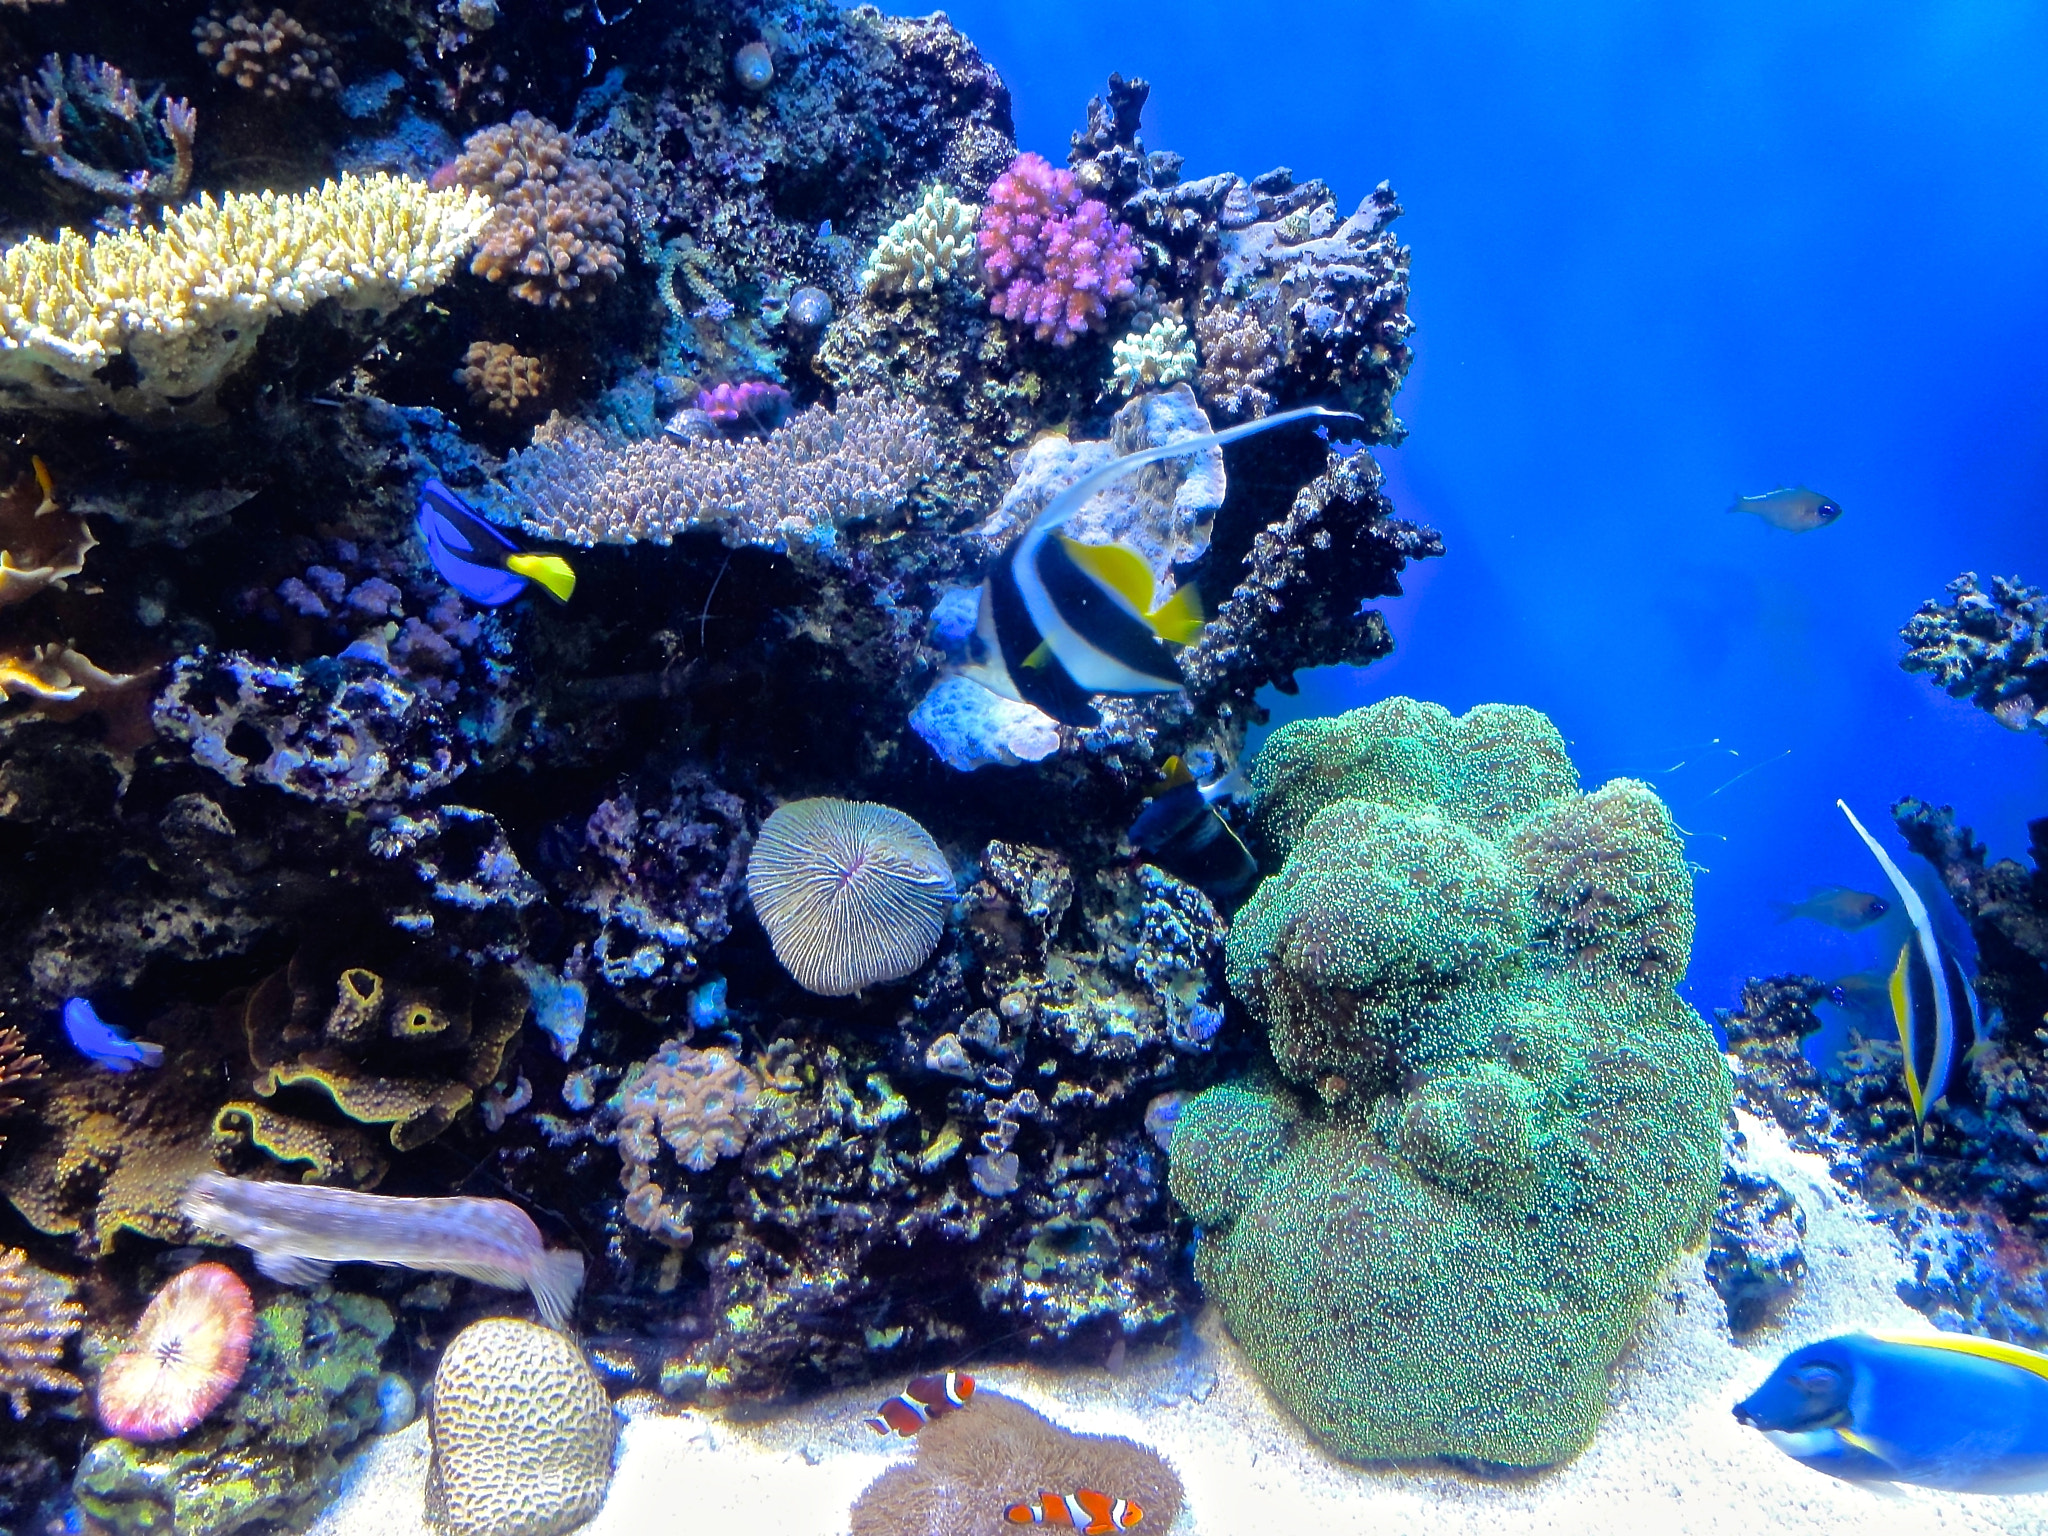 Sony DSC-HX5V sample photo. Monterey bay aquarium photography